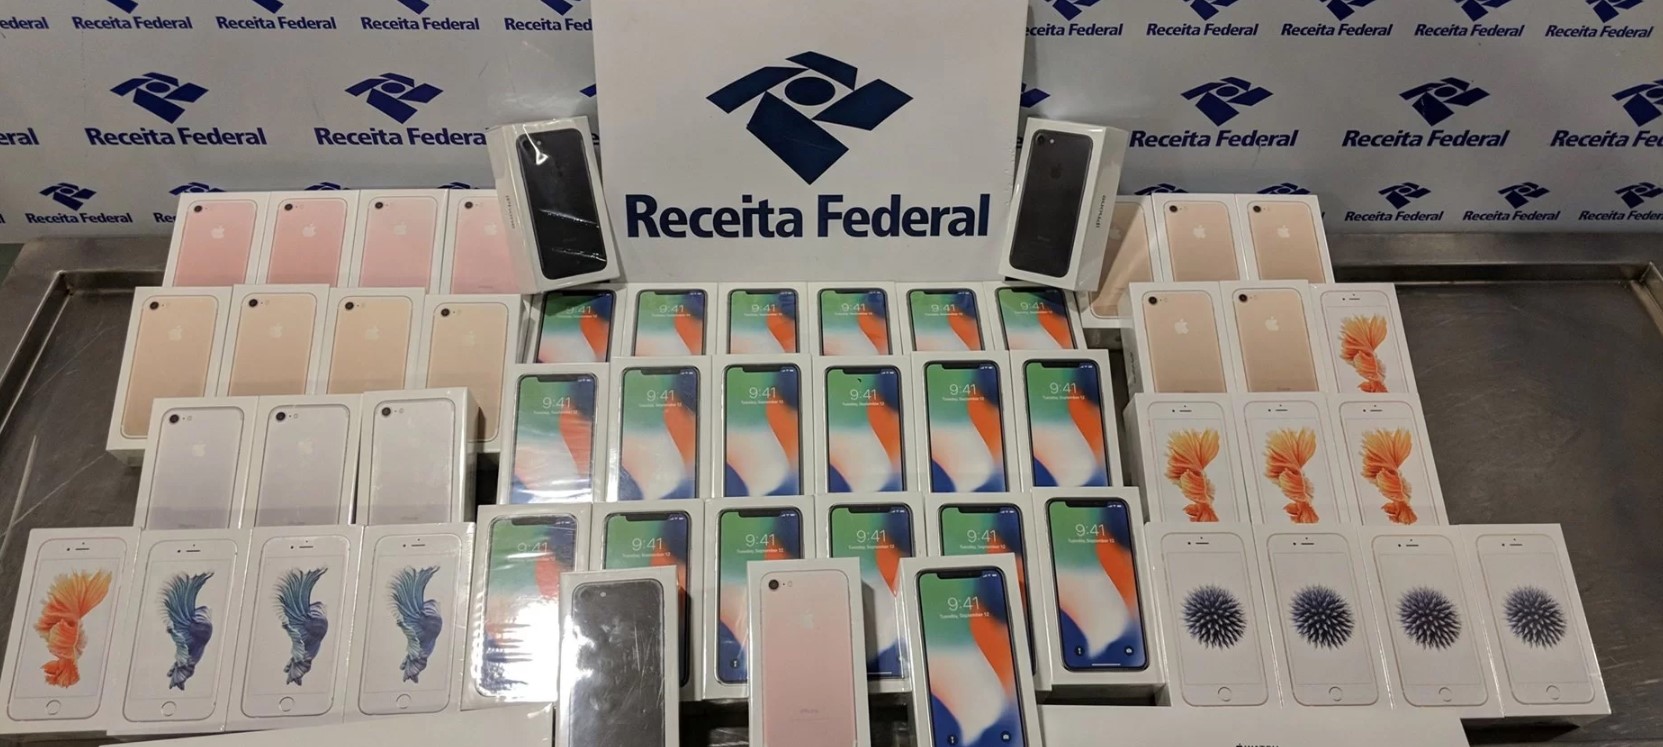 Leilão da Receita Federal nesta quarta-feira (21) oferta celulares por R$ 450; saiba detalhes